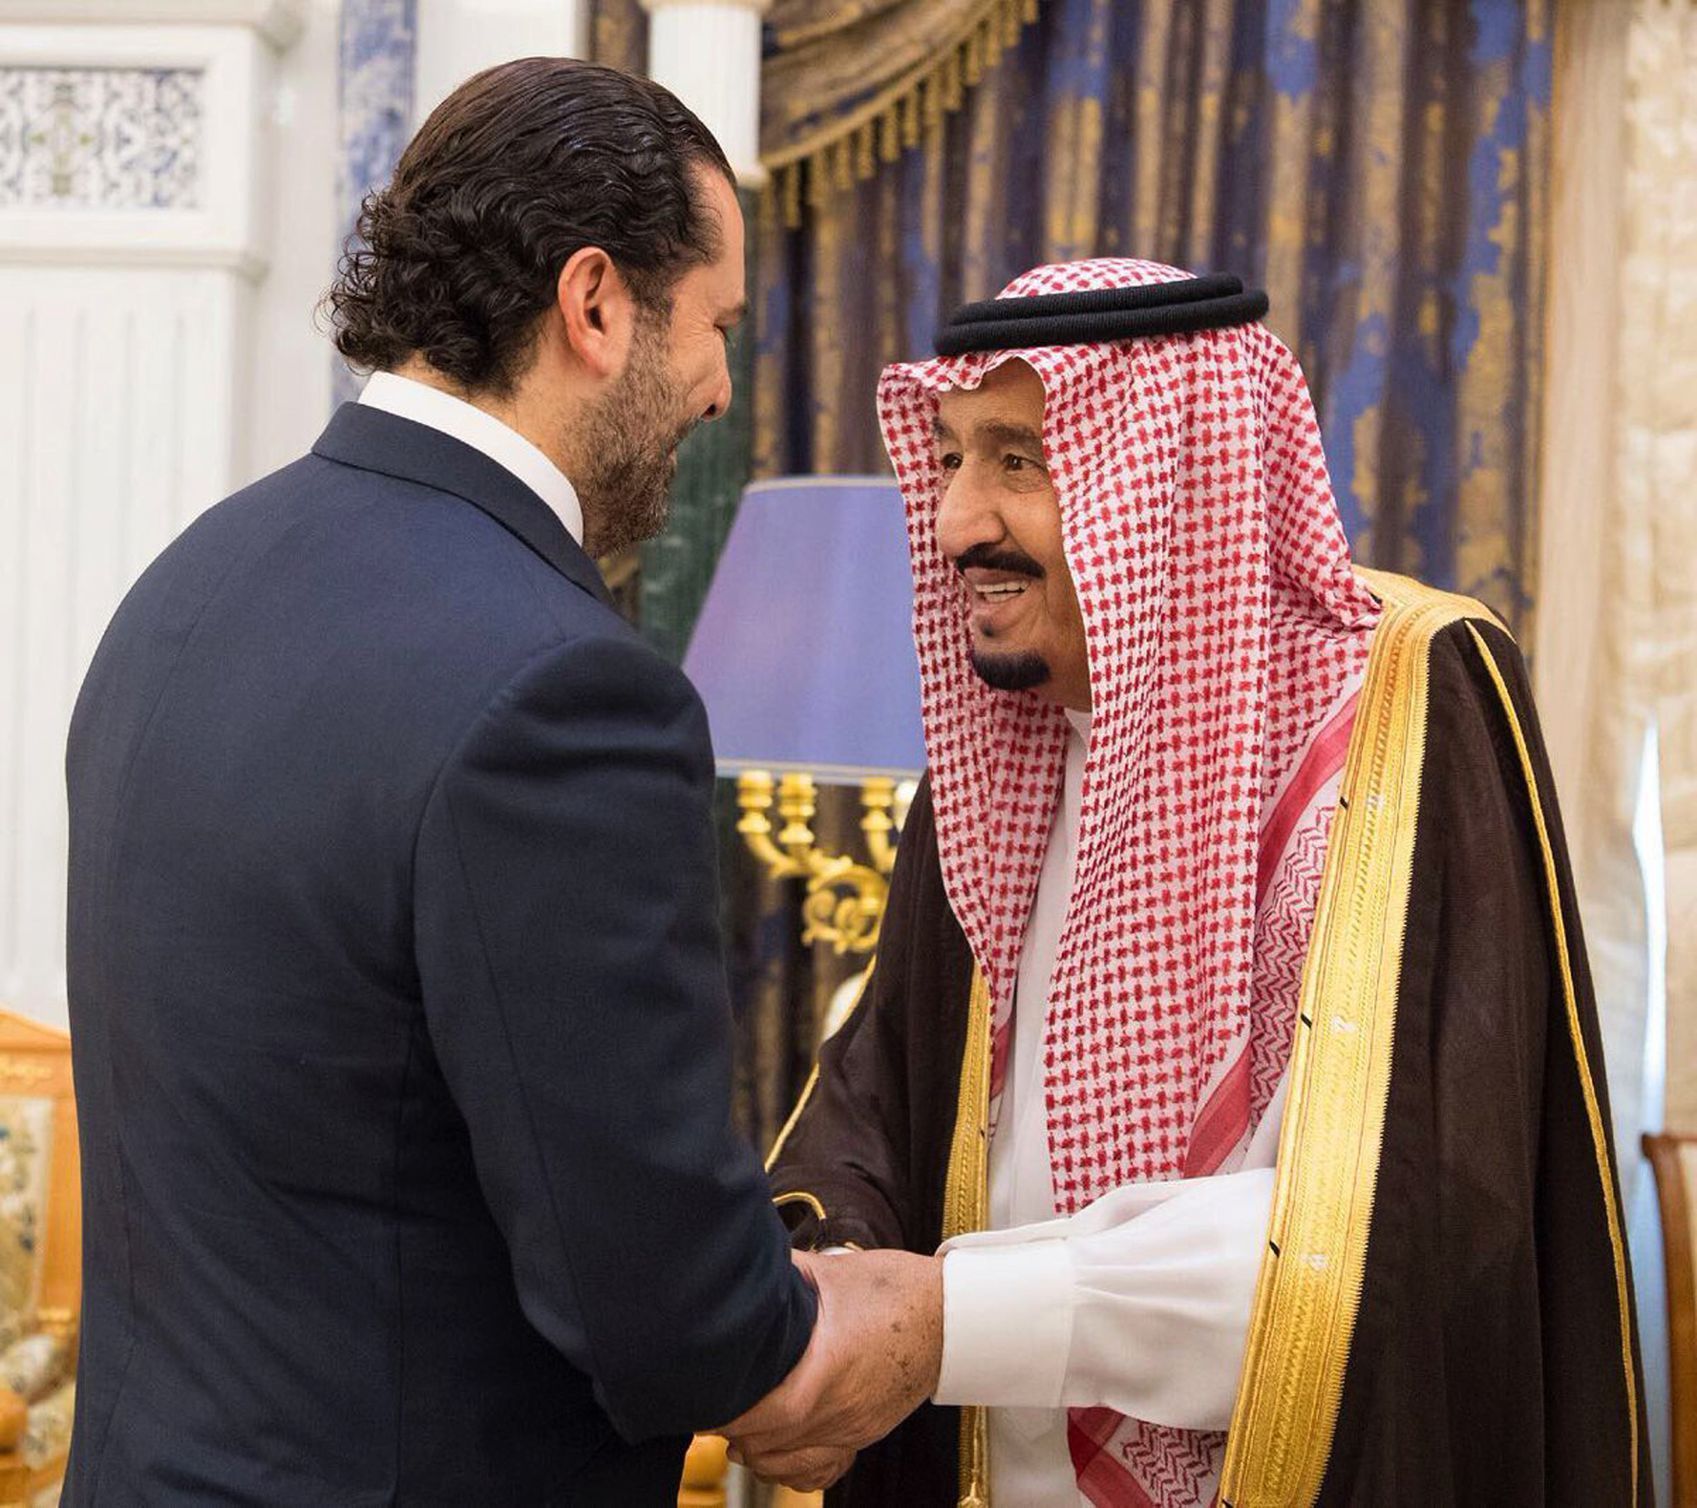 Saúdskoarabský král Salmán (vpravo) se 6. listopadu setkal s libanonským premiérem Saadem Harírím.